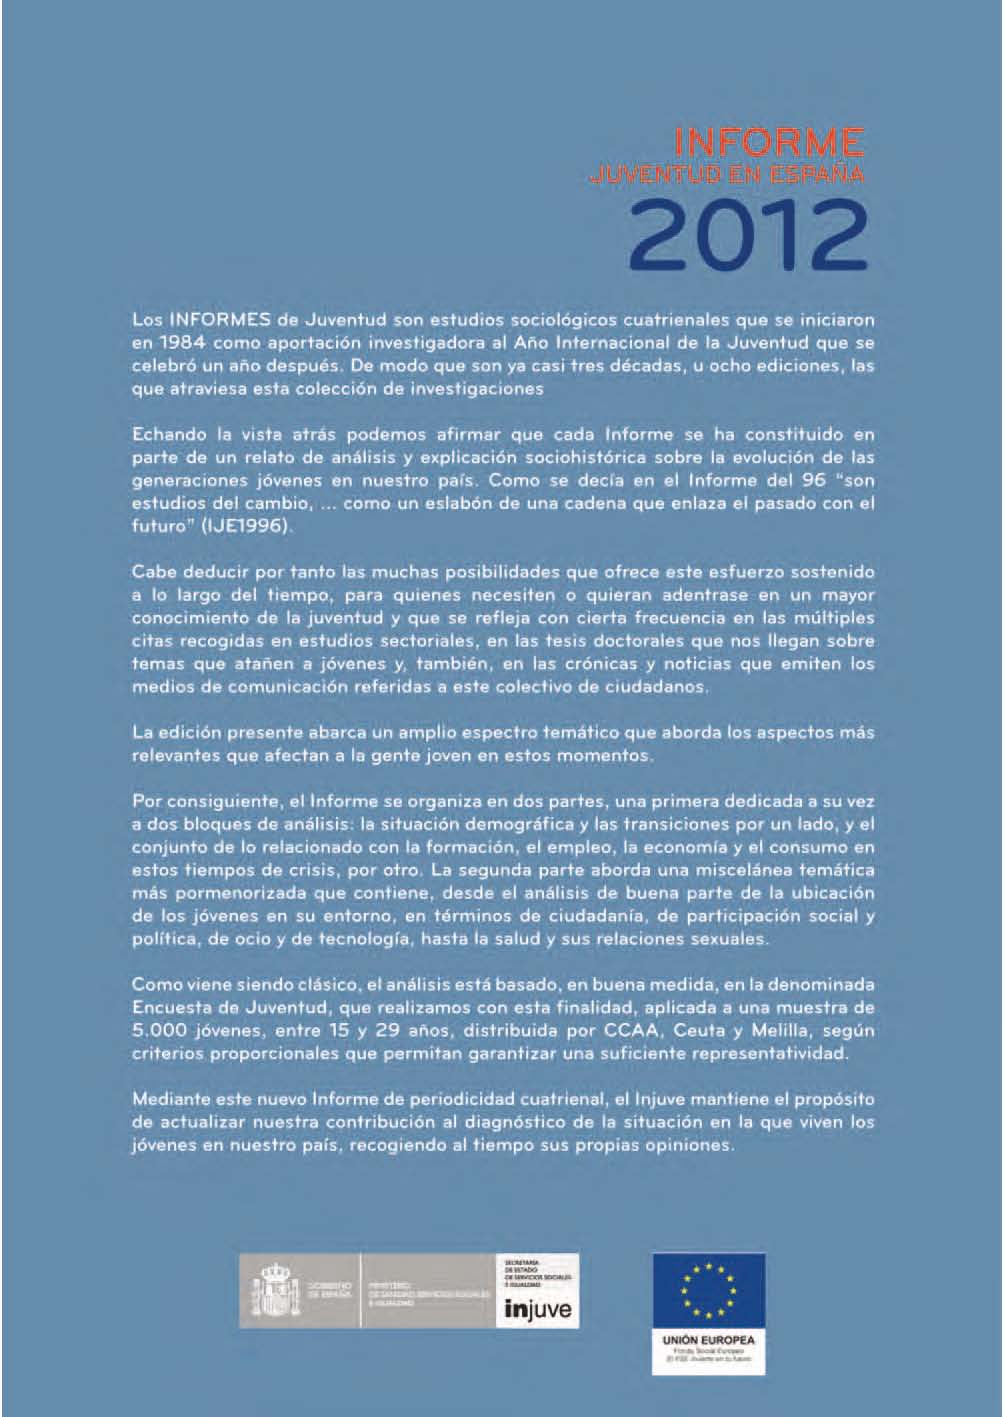 2012 Por consiguiente,.1 Informe Sil organiza en dos partos, una primera ded,cada I!